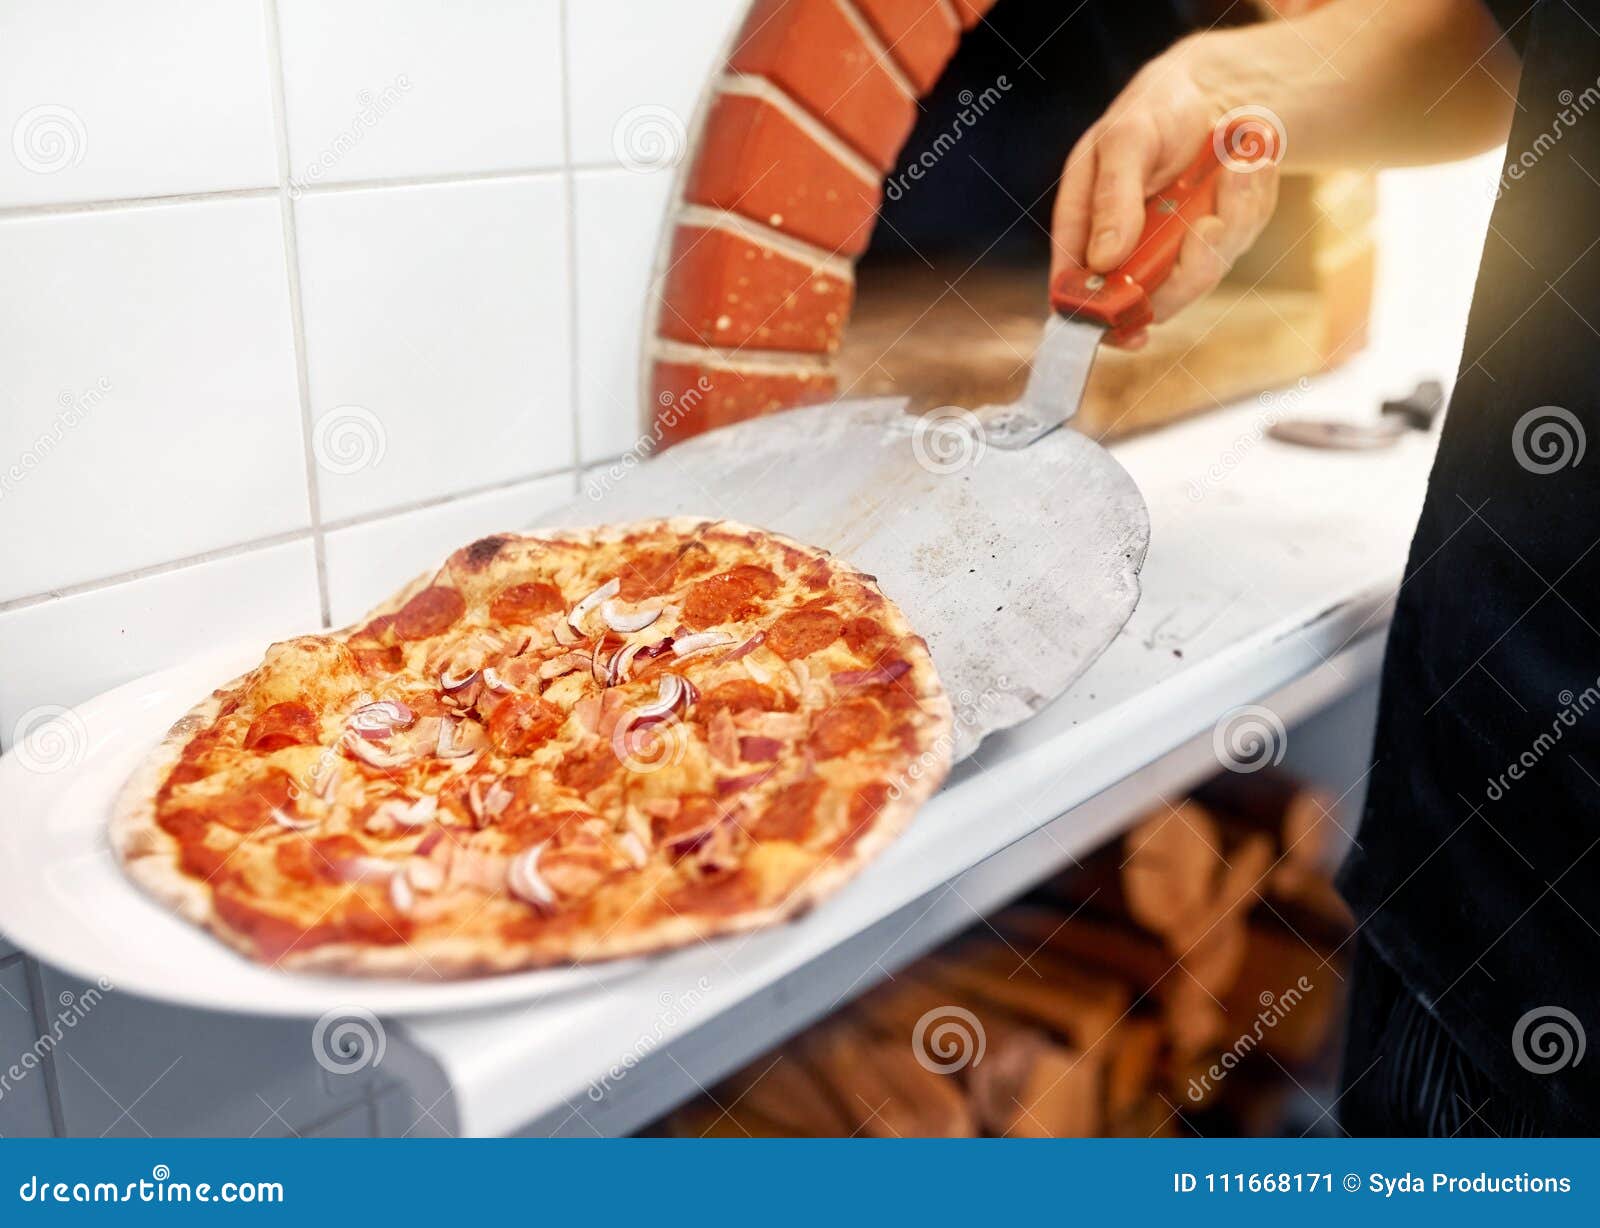 что положить в пиццу начинка с колбасой фото 49